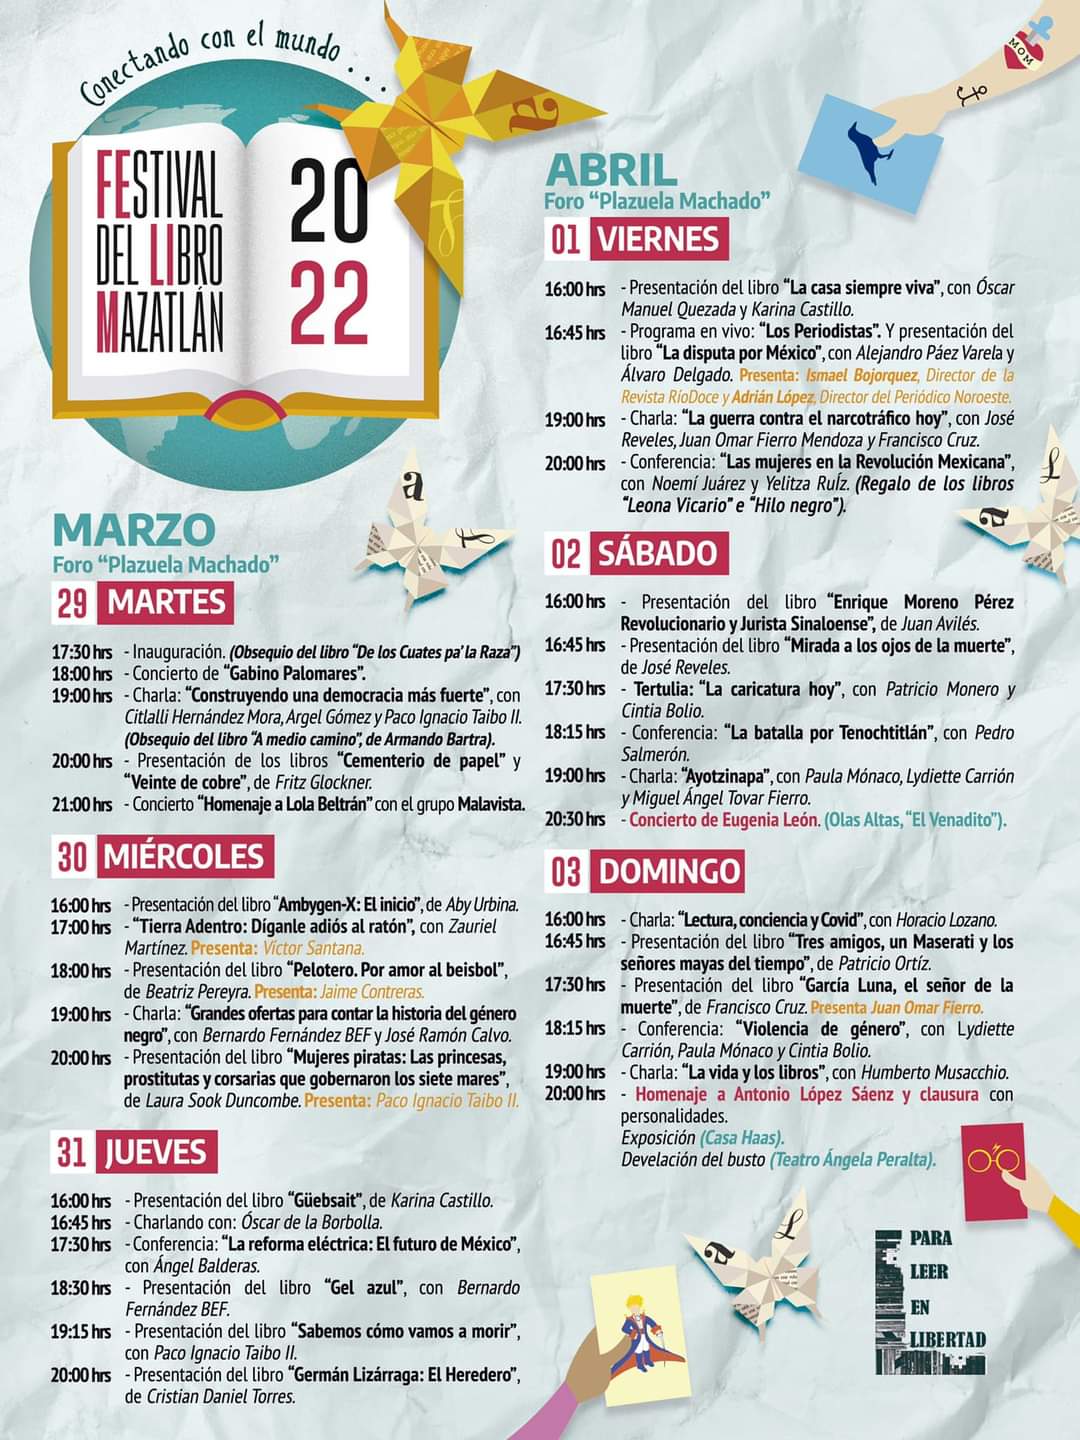 Todo listo para el inicio de la Feria del Libro Mazatlán 2022